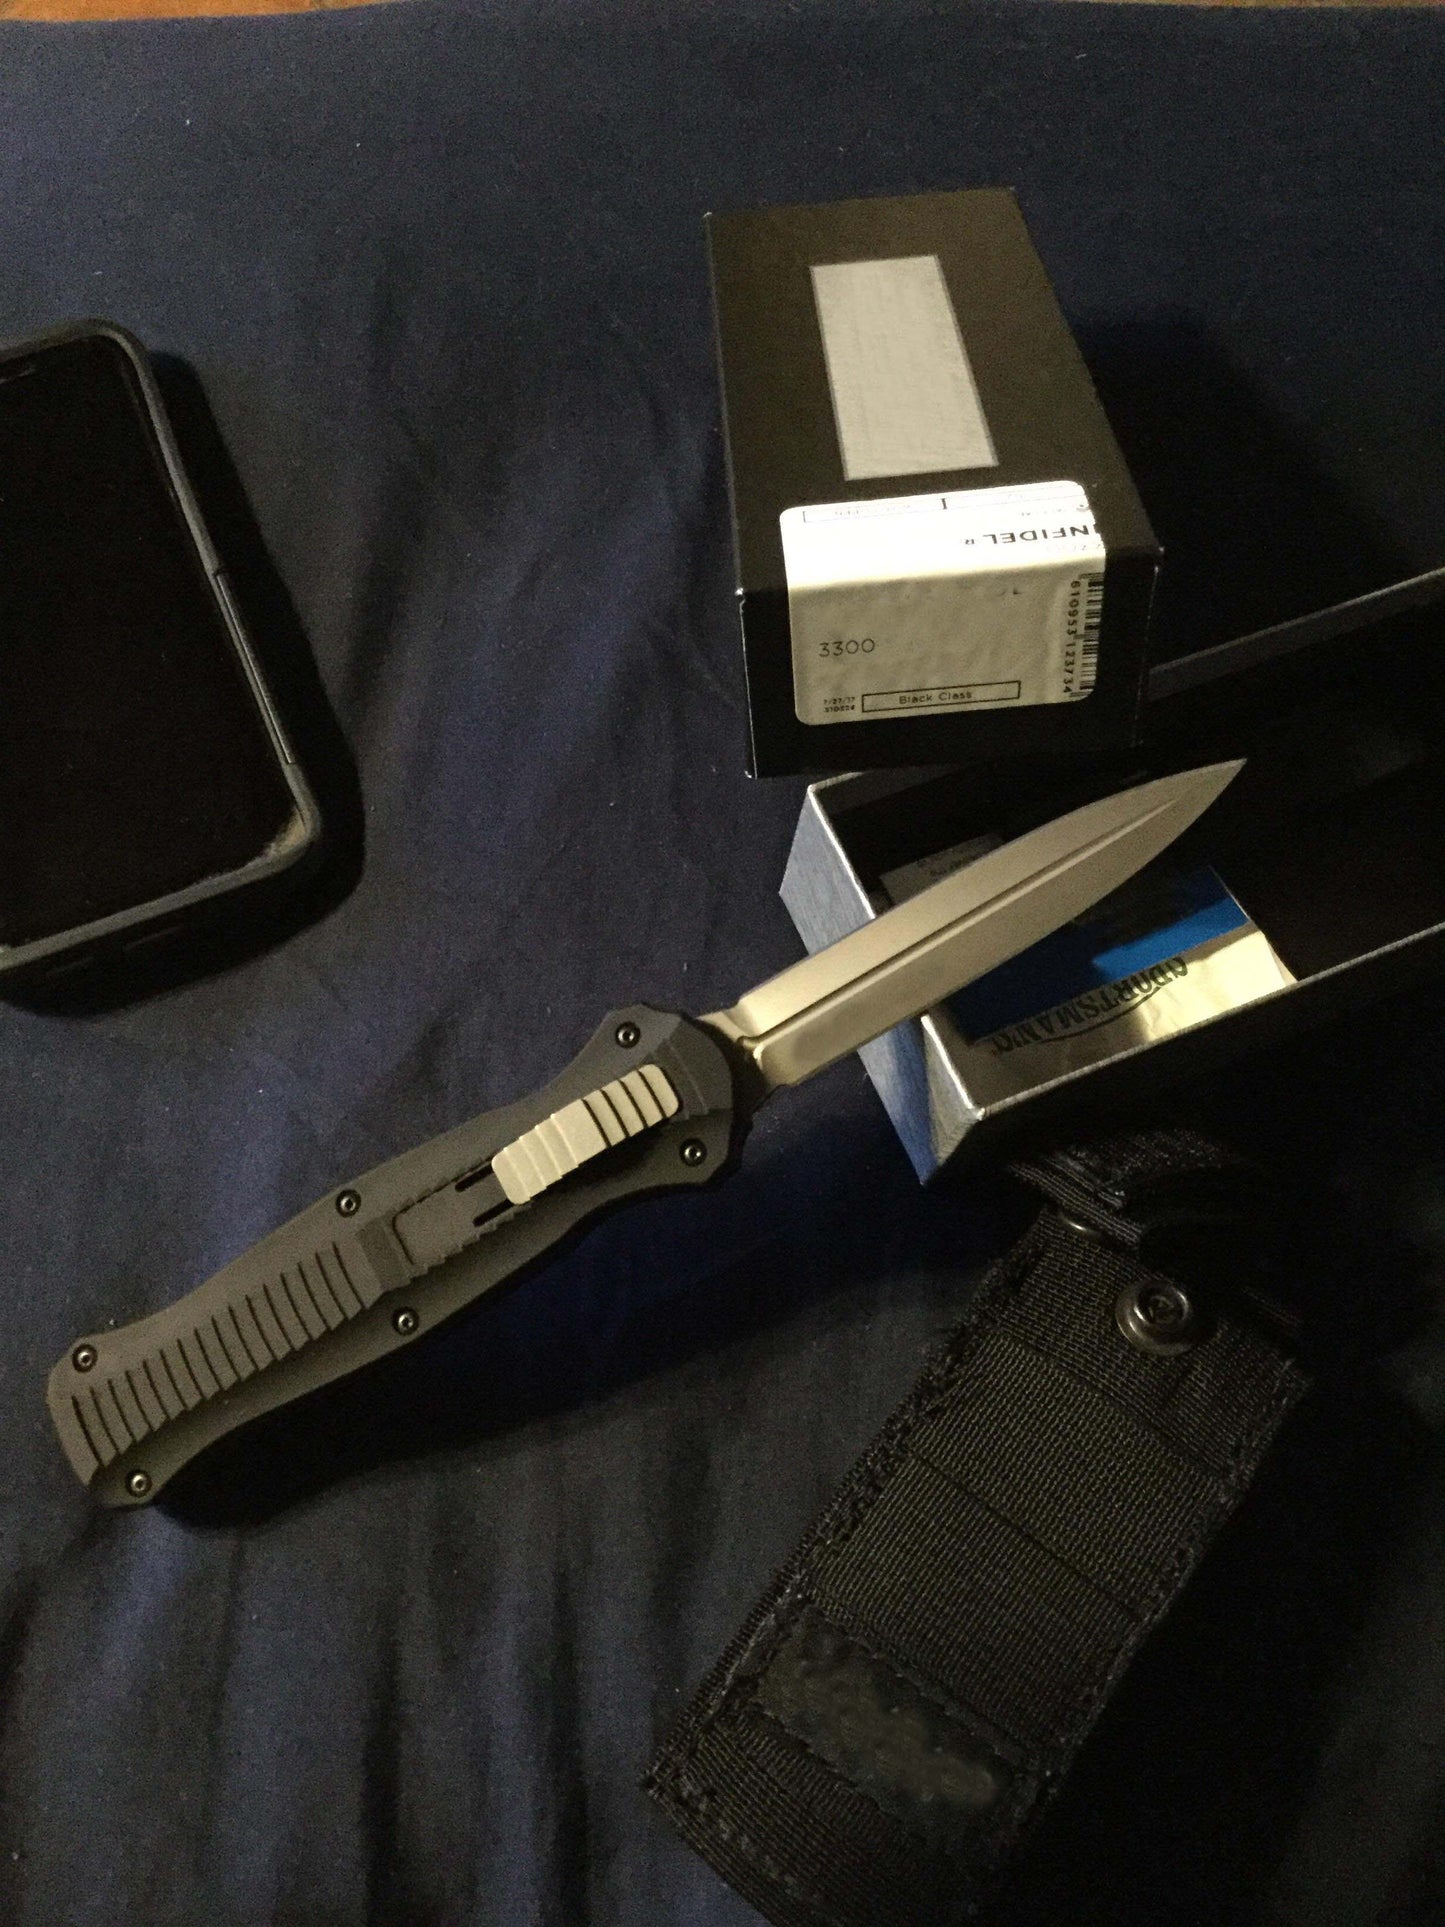 🎄BM Infidel D/E Dagger OTF Automatic Knife (7,56 ίντσες μαύρο)